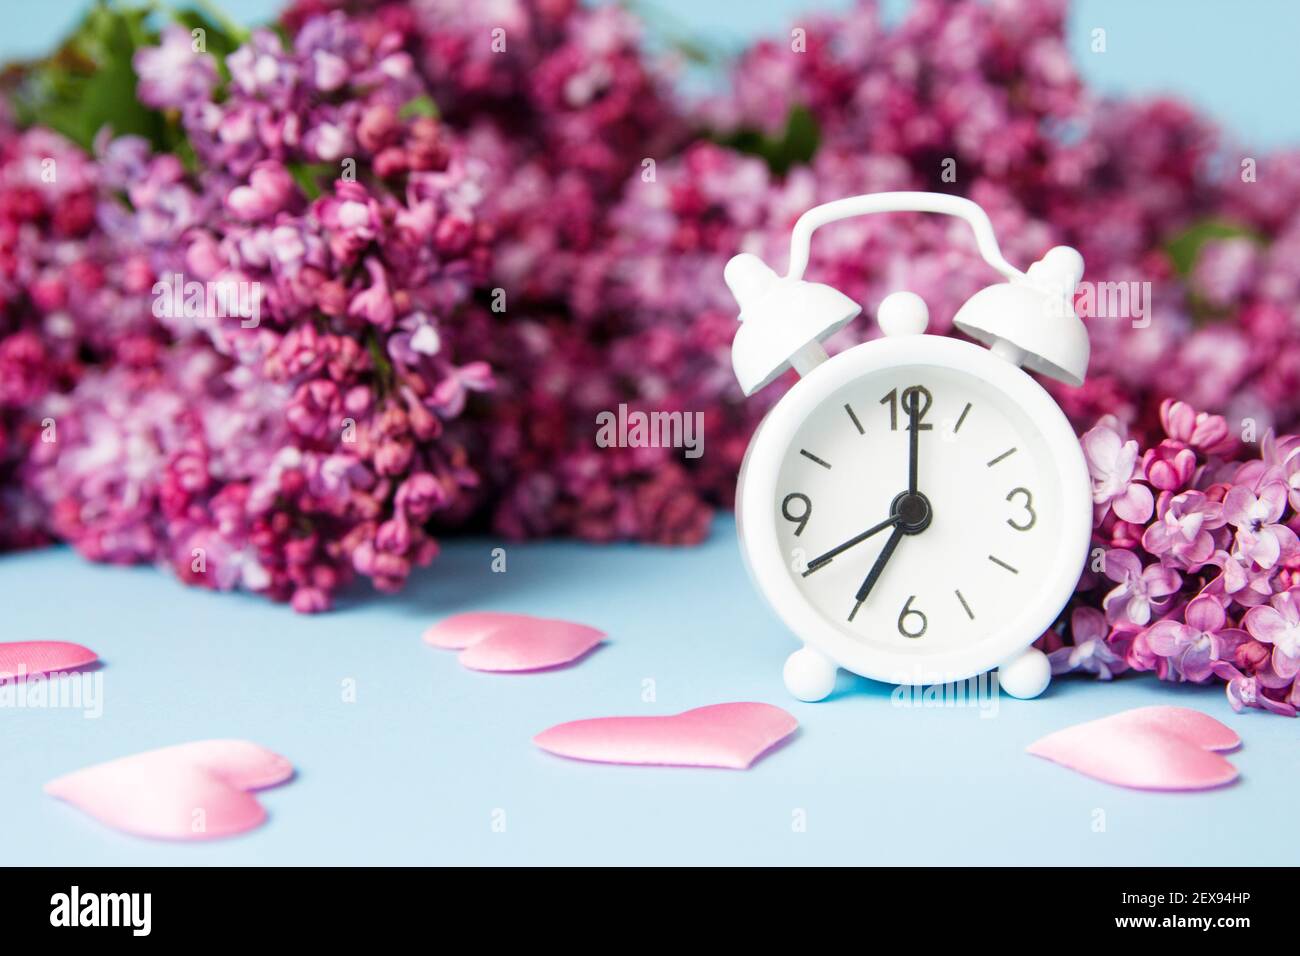 Flieder Blumen mit vintage winzig Wecker auf blauem Hintergrund. Frühlingshafte Morgenkonzeption. Stockfoto